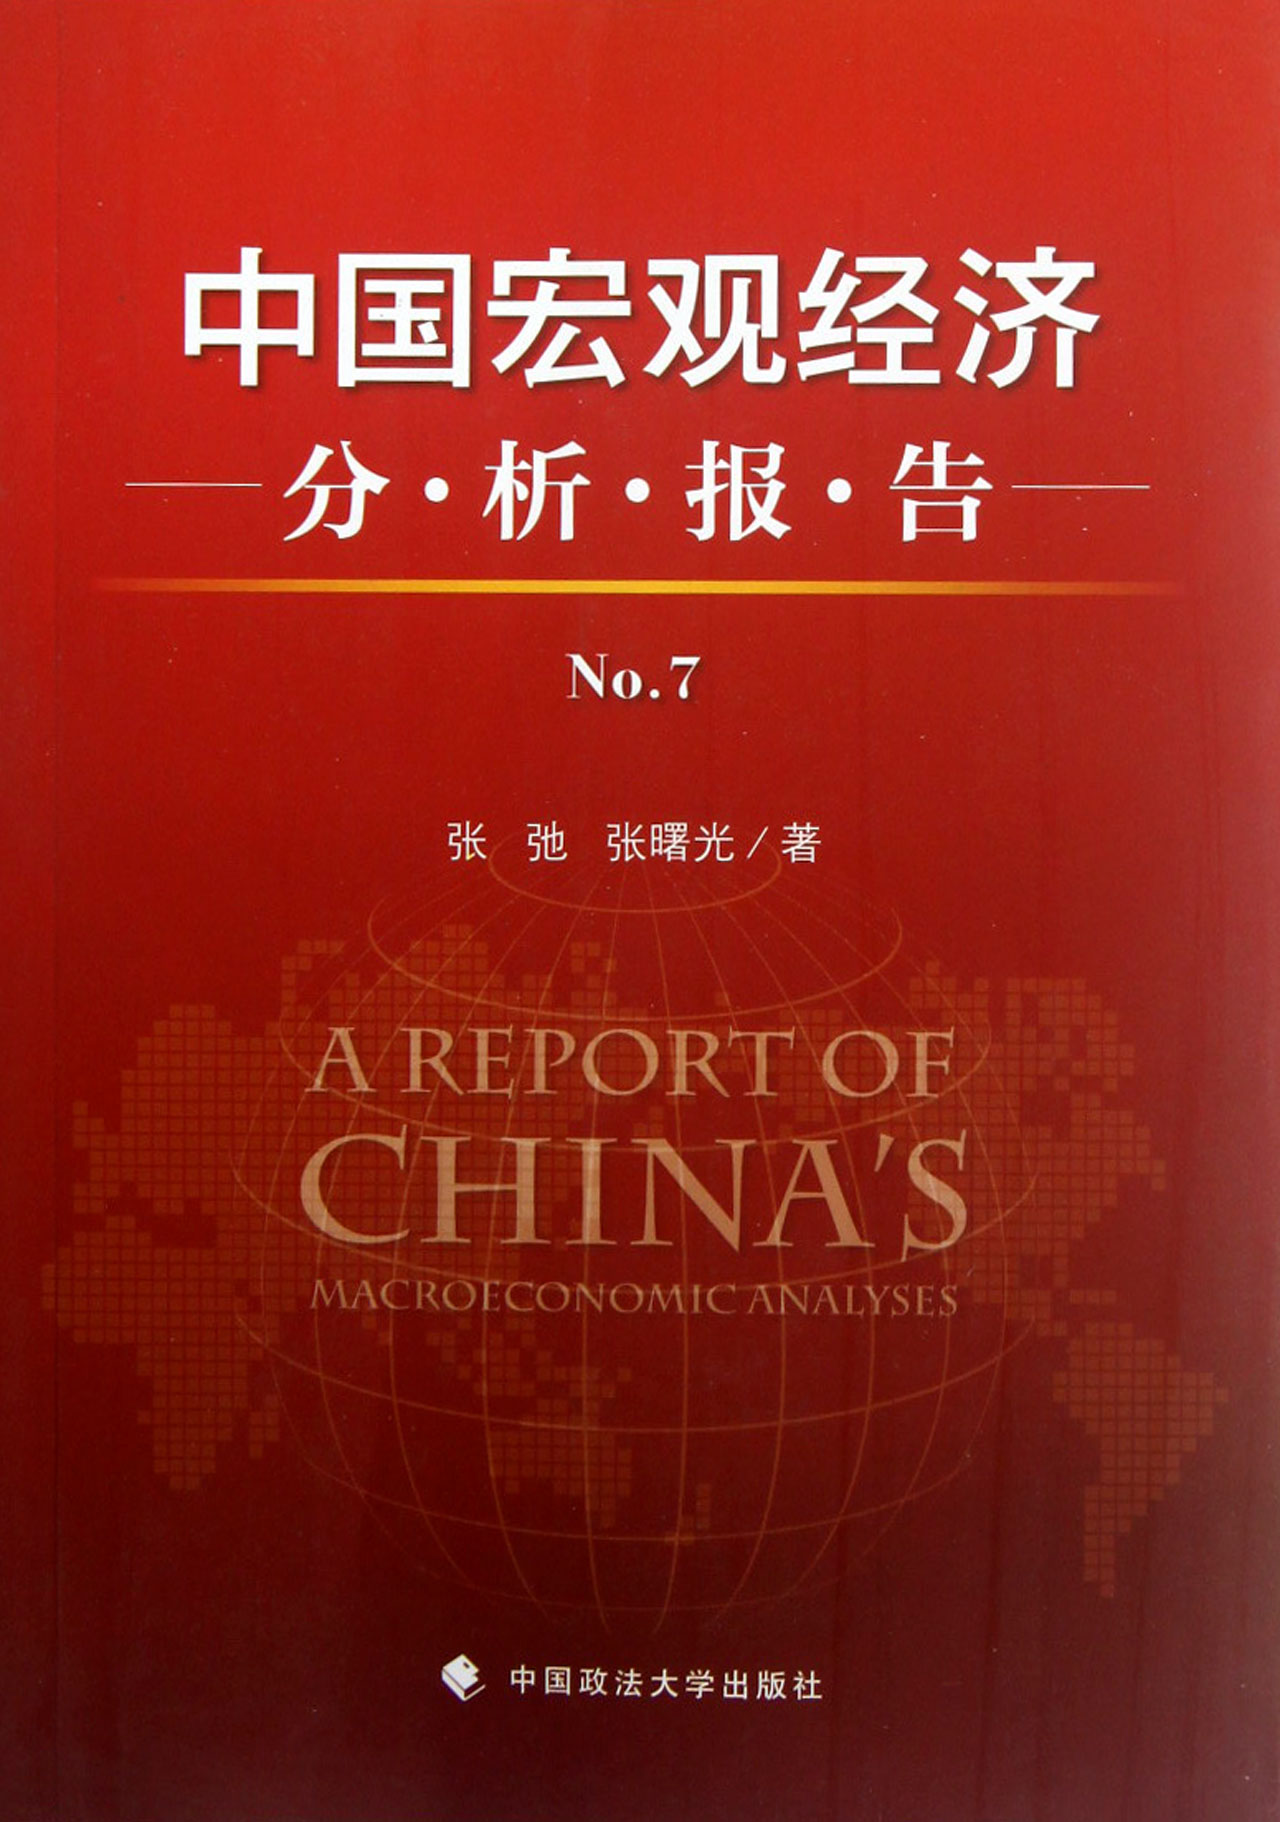 中国宏观经济分析报告(No.7) \/张弛\/\/张曙光-图书